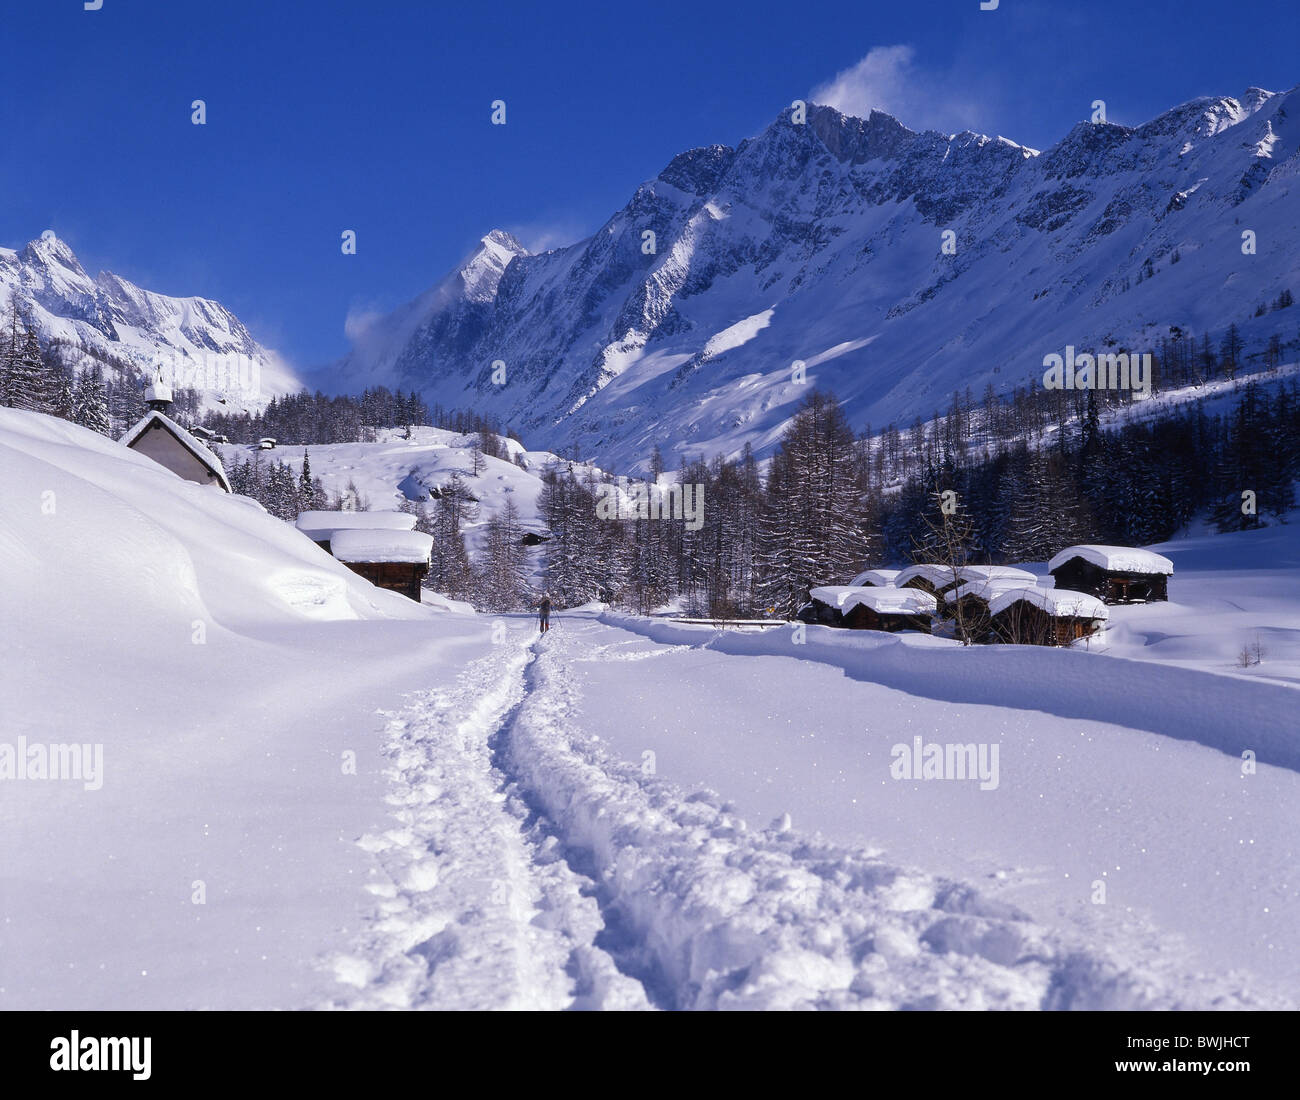 Frazione di Lotschental insediamento Kuhmad snowbound coperto di neve fresca neve nevicata neve orme vie trace Foto Stock